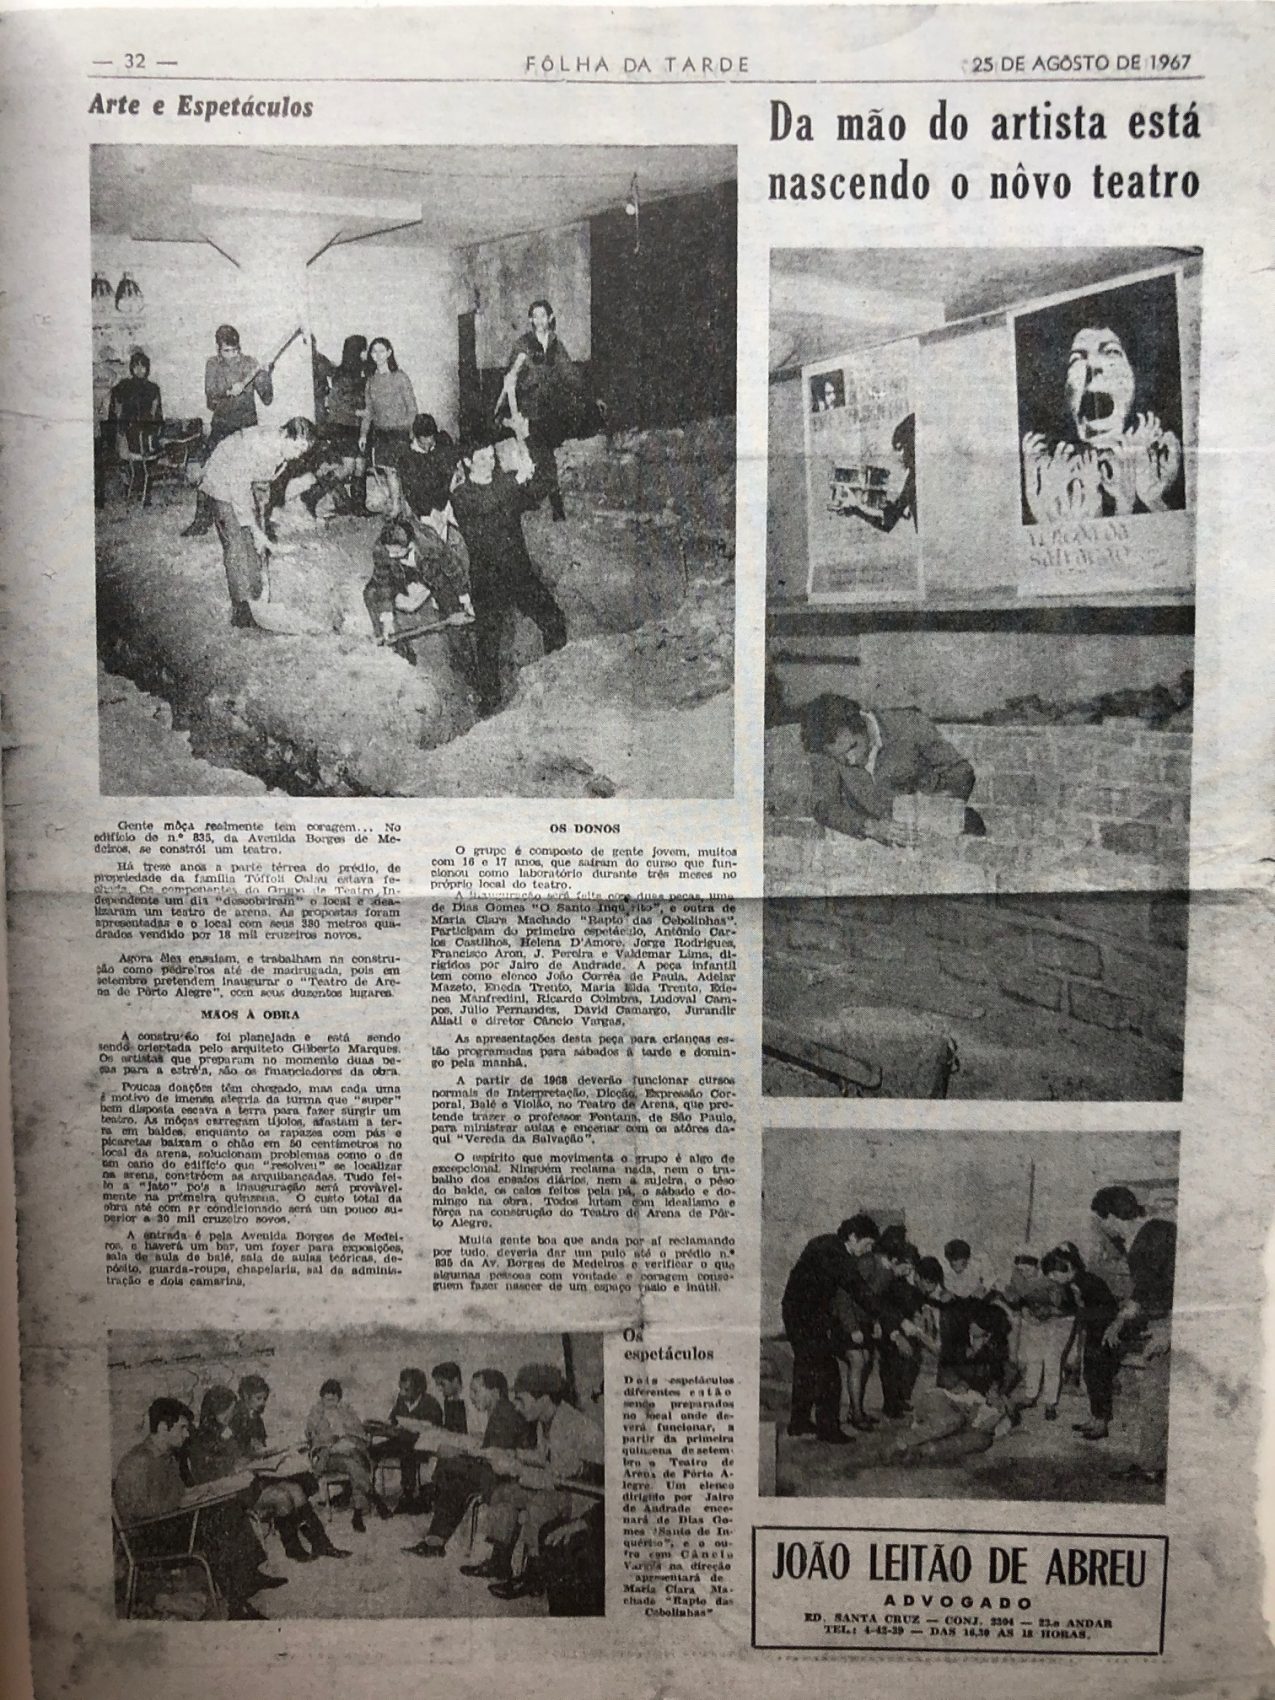 Folha da Tarde de 25 de agosto de 1967 noticia nascimento do Teatro de Arena, na Capital. Imagem do livro Teatro de Arena Palco de Resistência, de Rafael Guimaraens